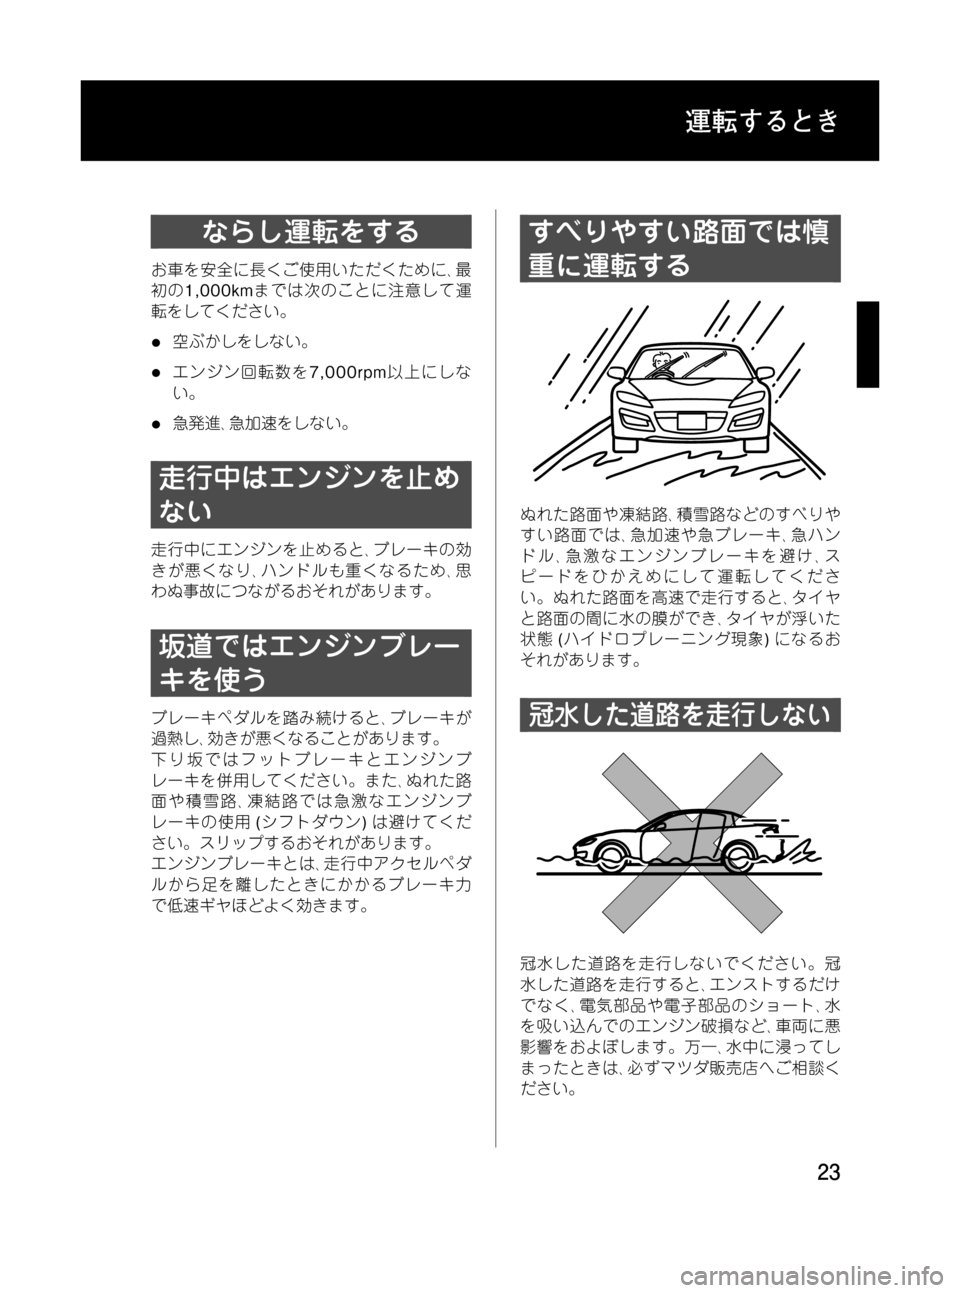 MAZDA MODEL RX 8 2008  取扱説明書 (in Japanese) Black plate (23,1)
ならし運転をする
お車を安全に長くご使用いただくために､最
初の1,000kmまでは次のことに注意して運
転をしてください。
l空ぶかし�